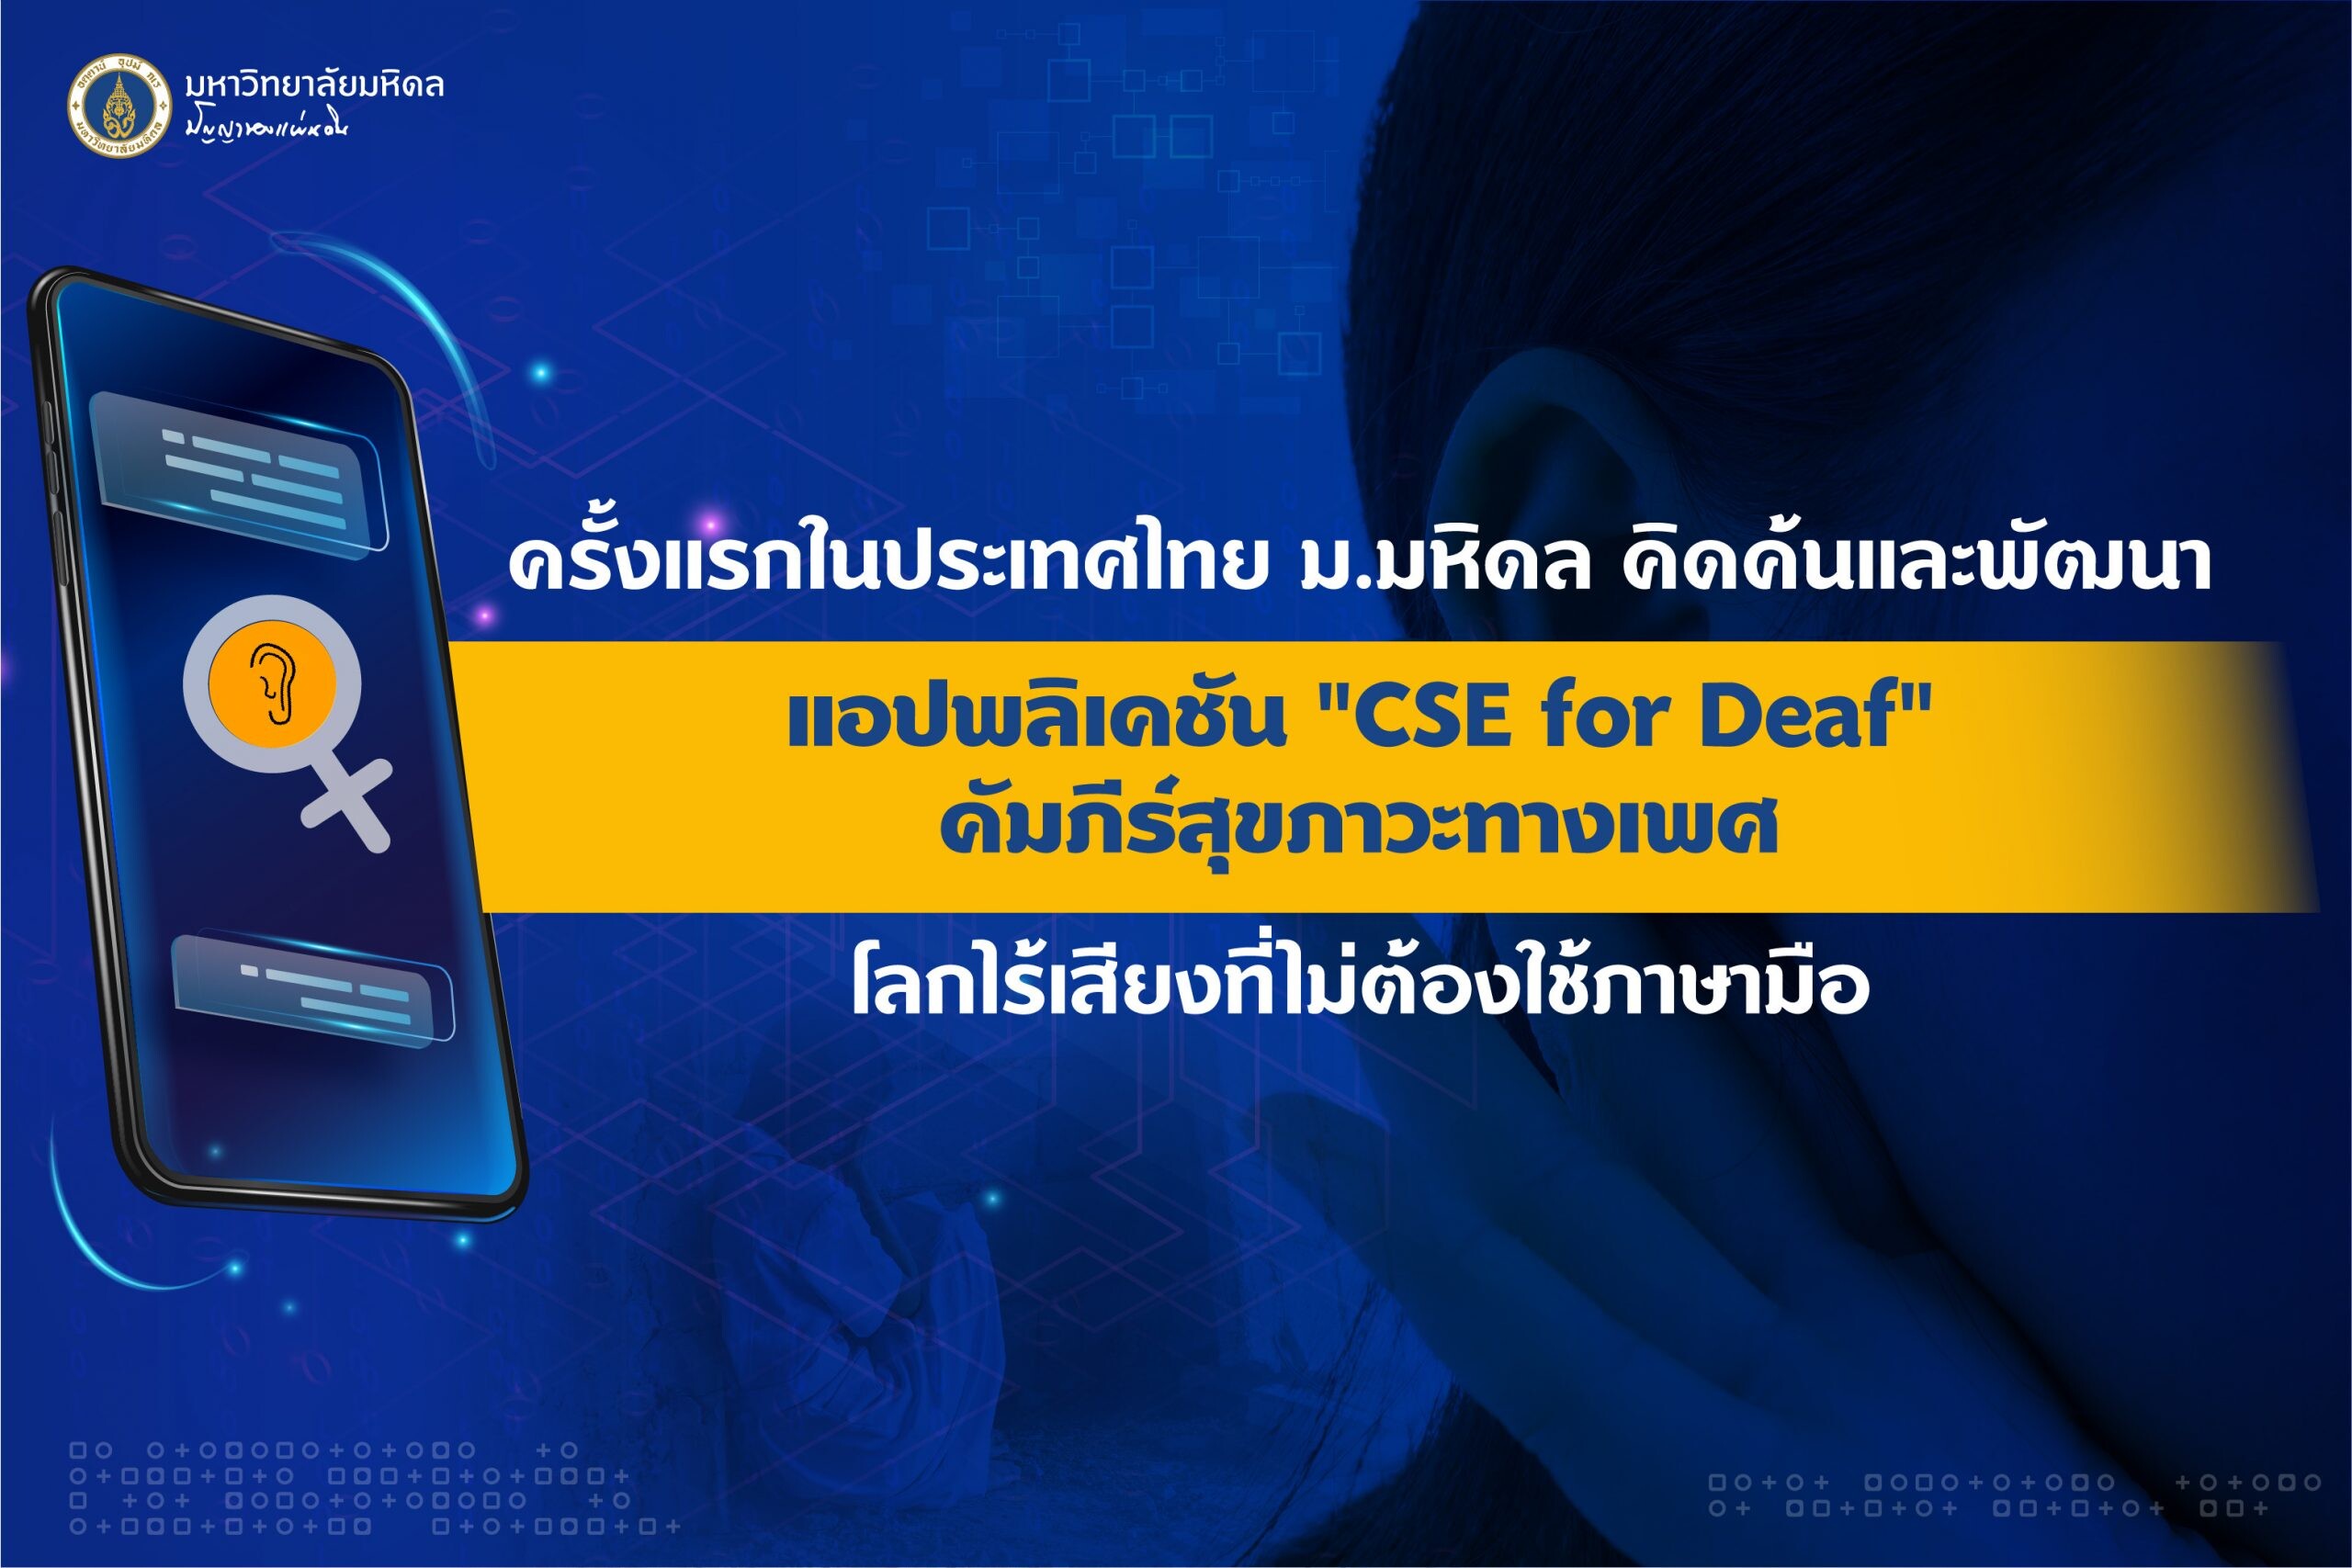 ครั้งแรกในประเทศไทย ม.มหิดล คิดค้นและพัฒนาแอปพลิเคชัน "CSE for Deaf" คัมภีร์สุขภาวะทางเพศ ในโลกไร้เสียงที่ไม่ต้องใช้ภาษามือ